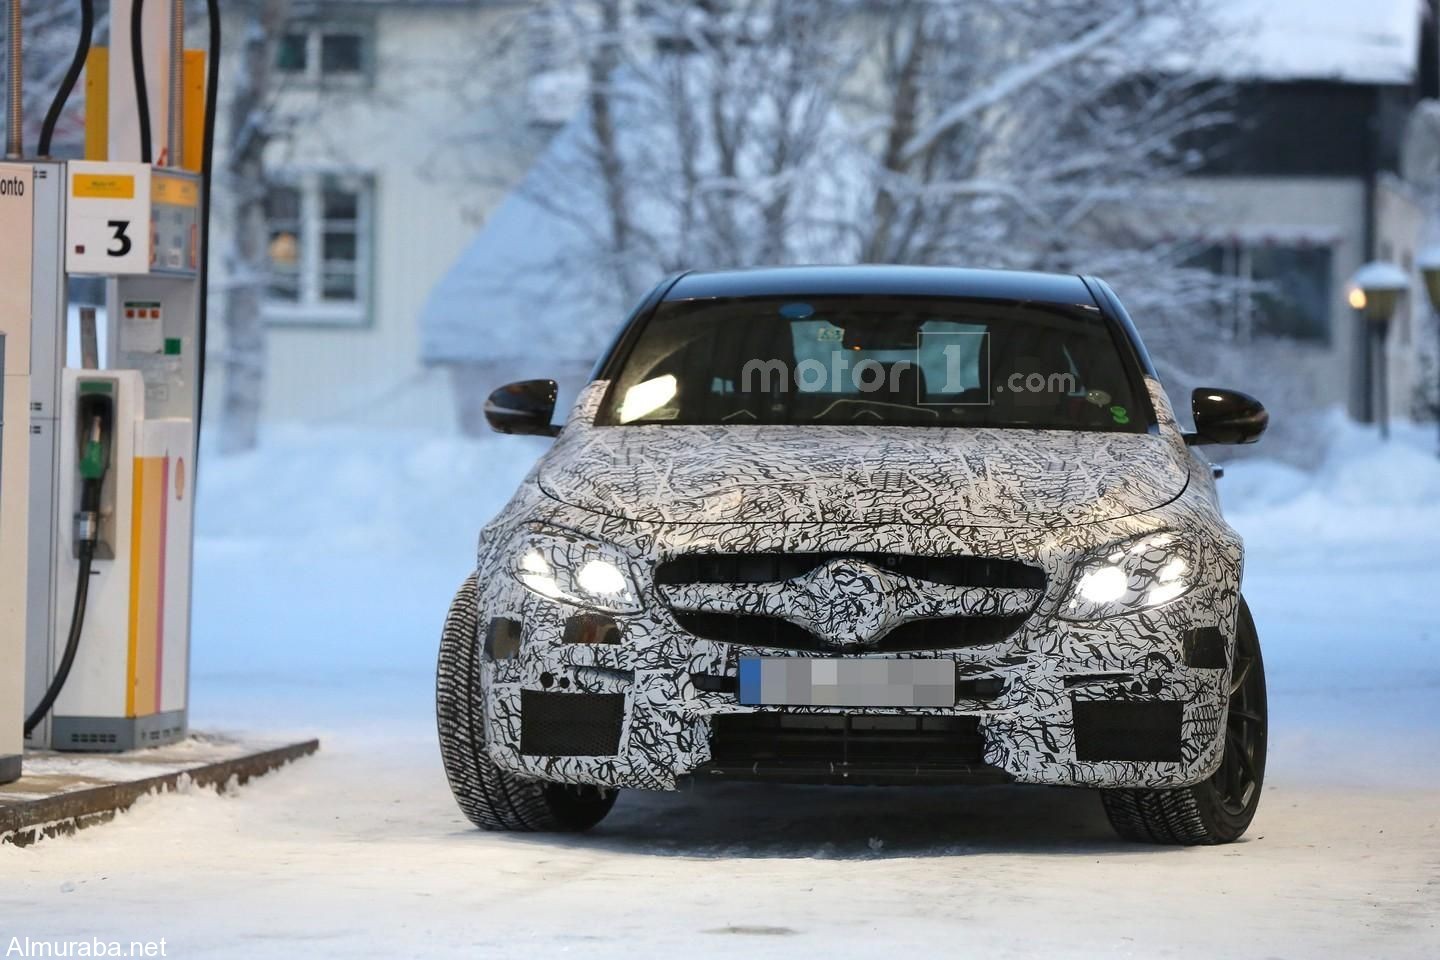 “بالصور” مرسيدس AMG E63 2017 تظهر خلال إختبارها في السويد + بعض المعلومات Mercedes